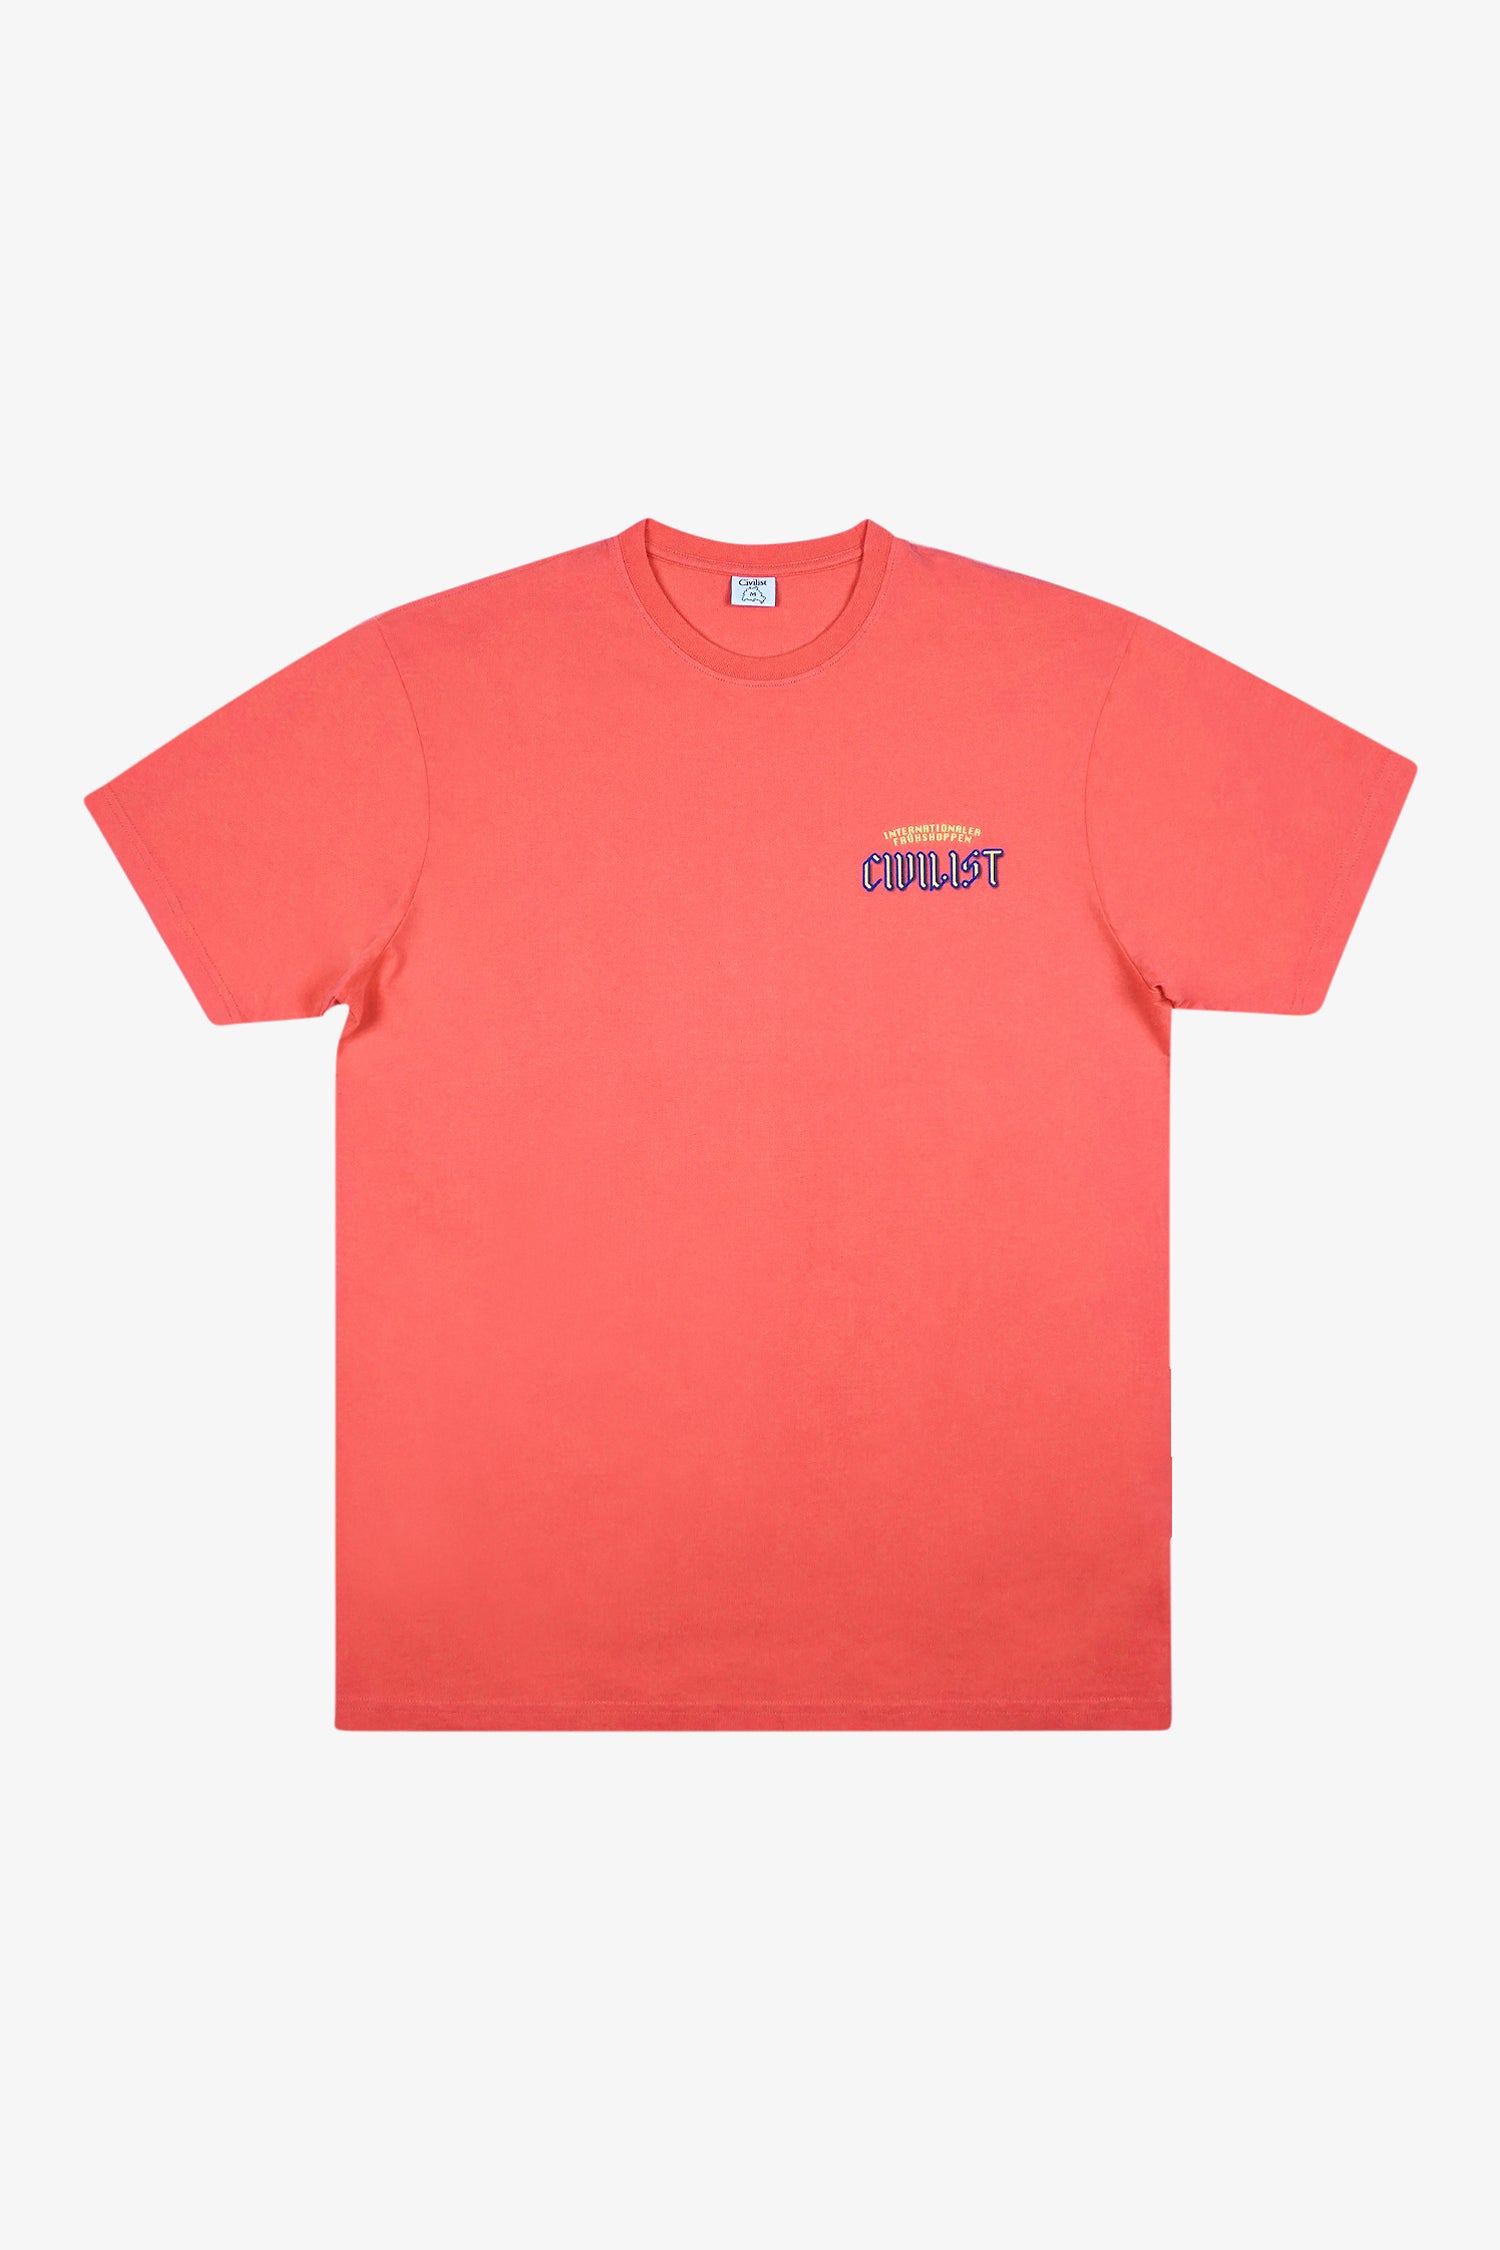 Selectshop FRAME - CIVILIST Früshoppen Tee T-Shirts Dubai